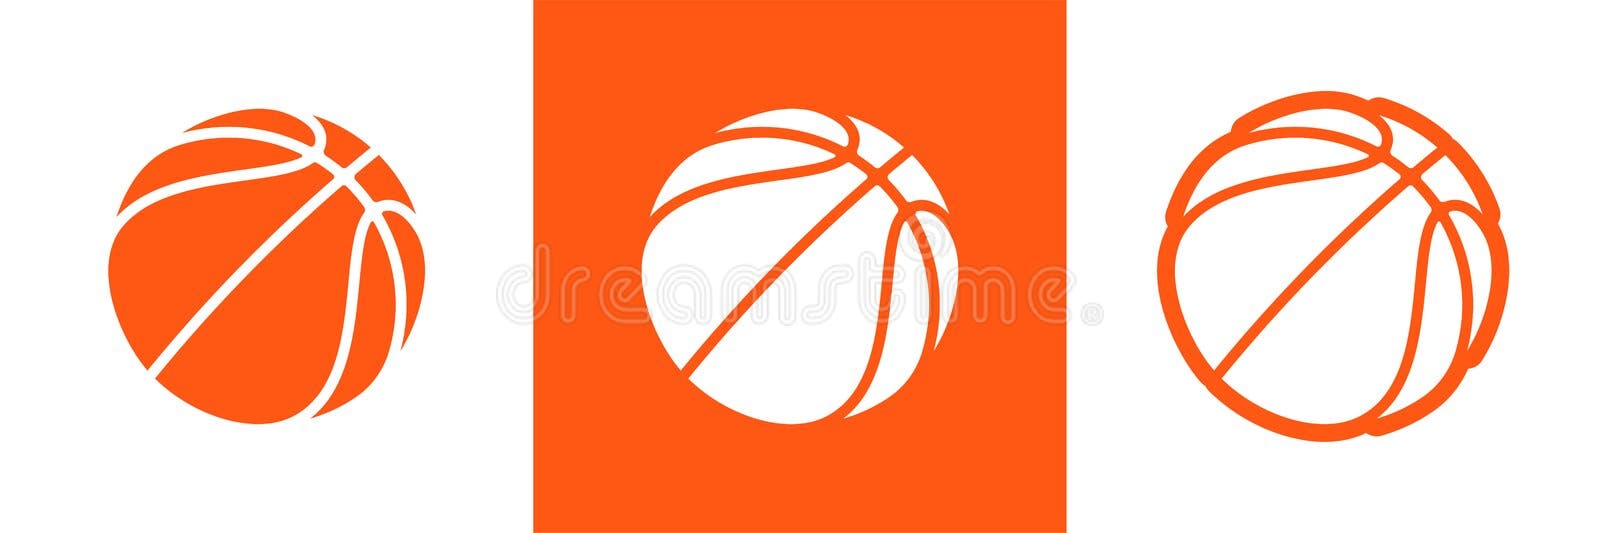 Bola para jogo de basquete. Royalty Free Stock SVG Vector and Clip Art